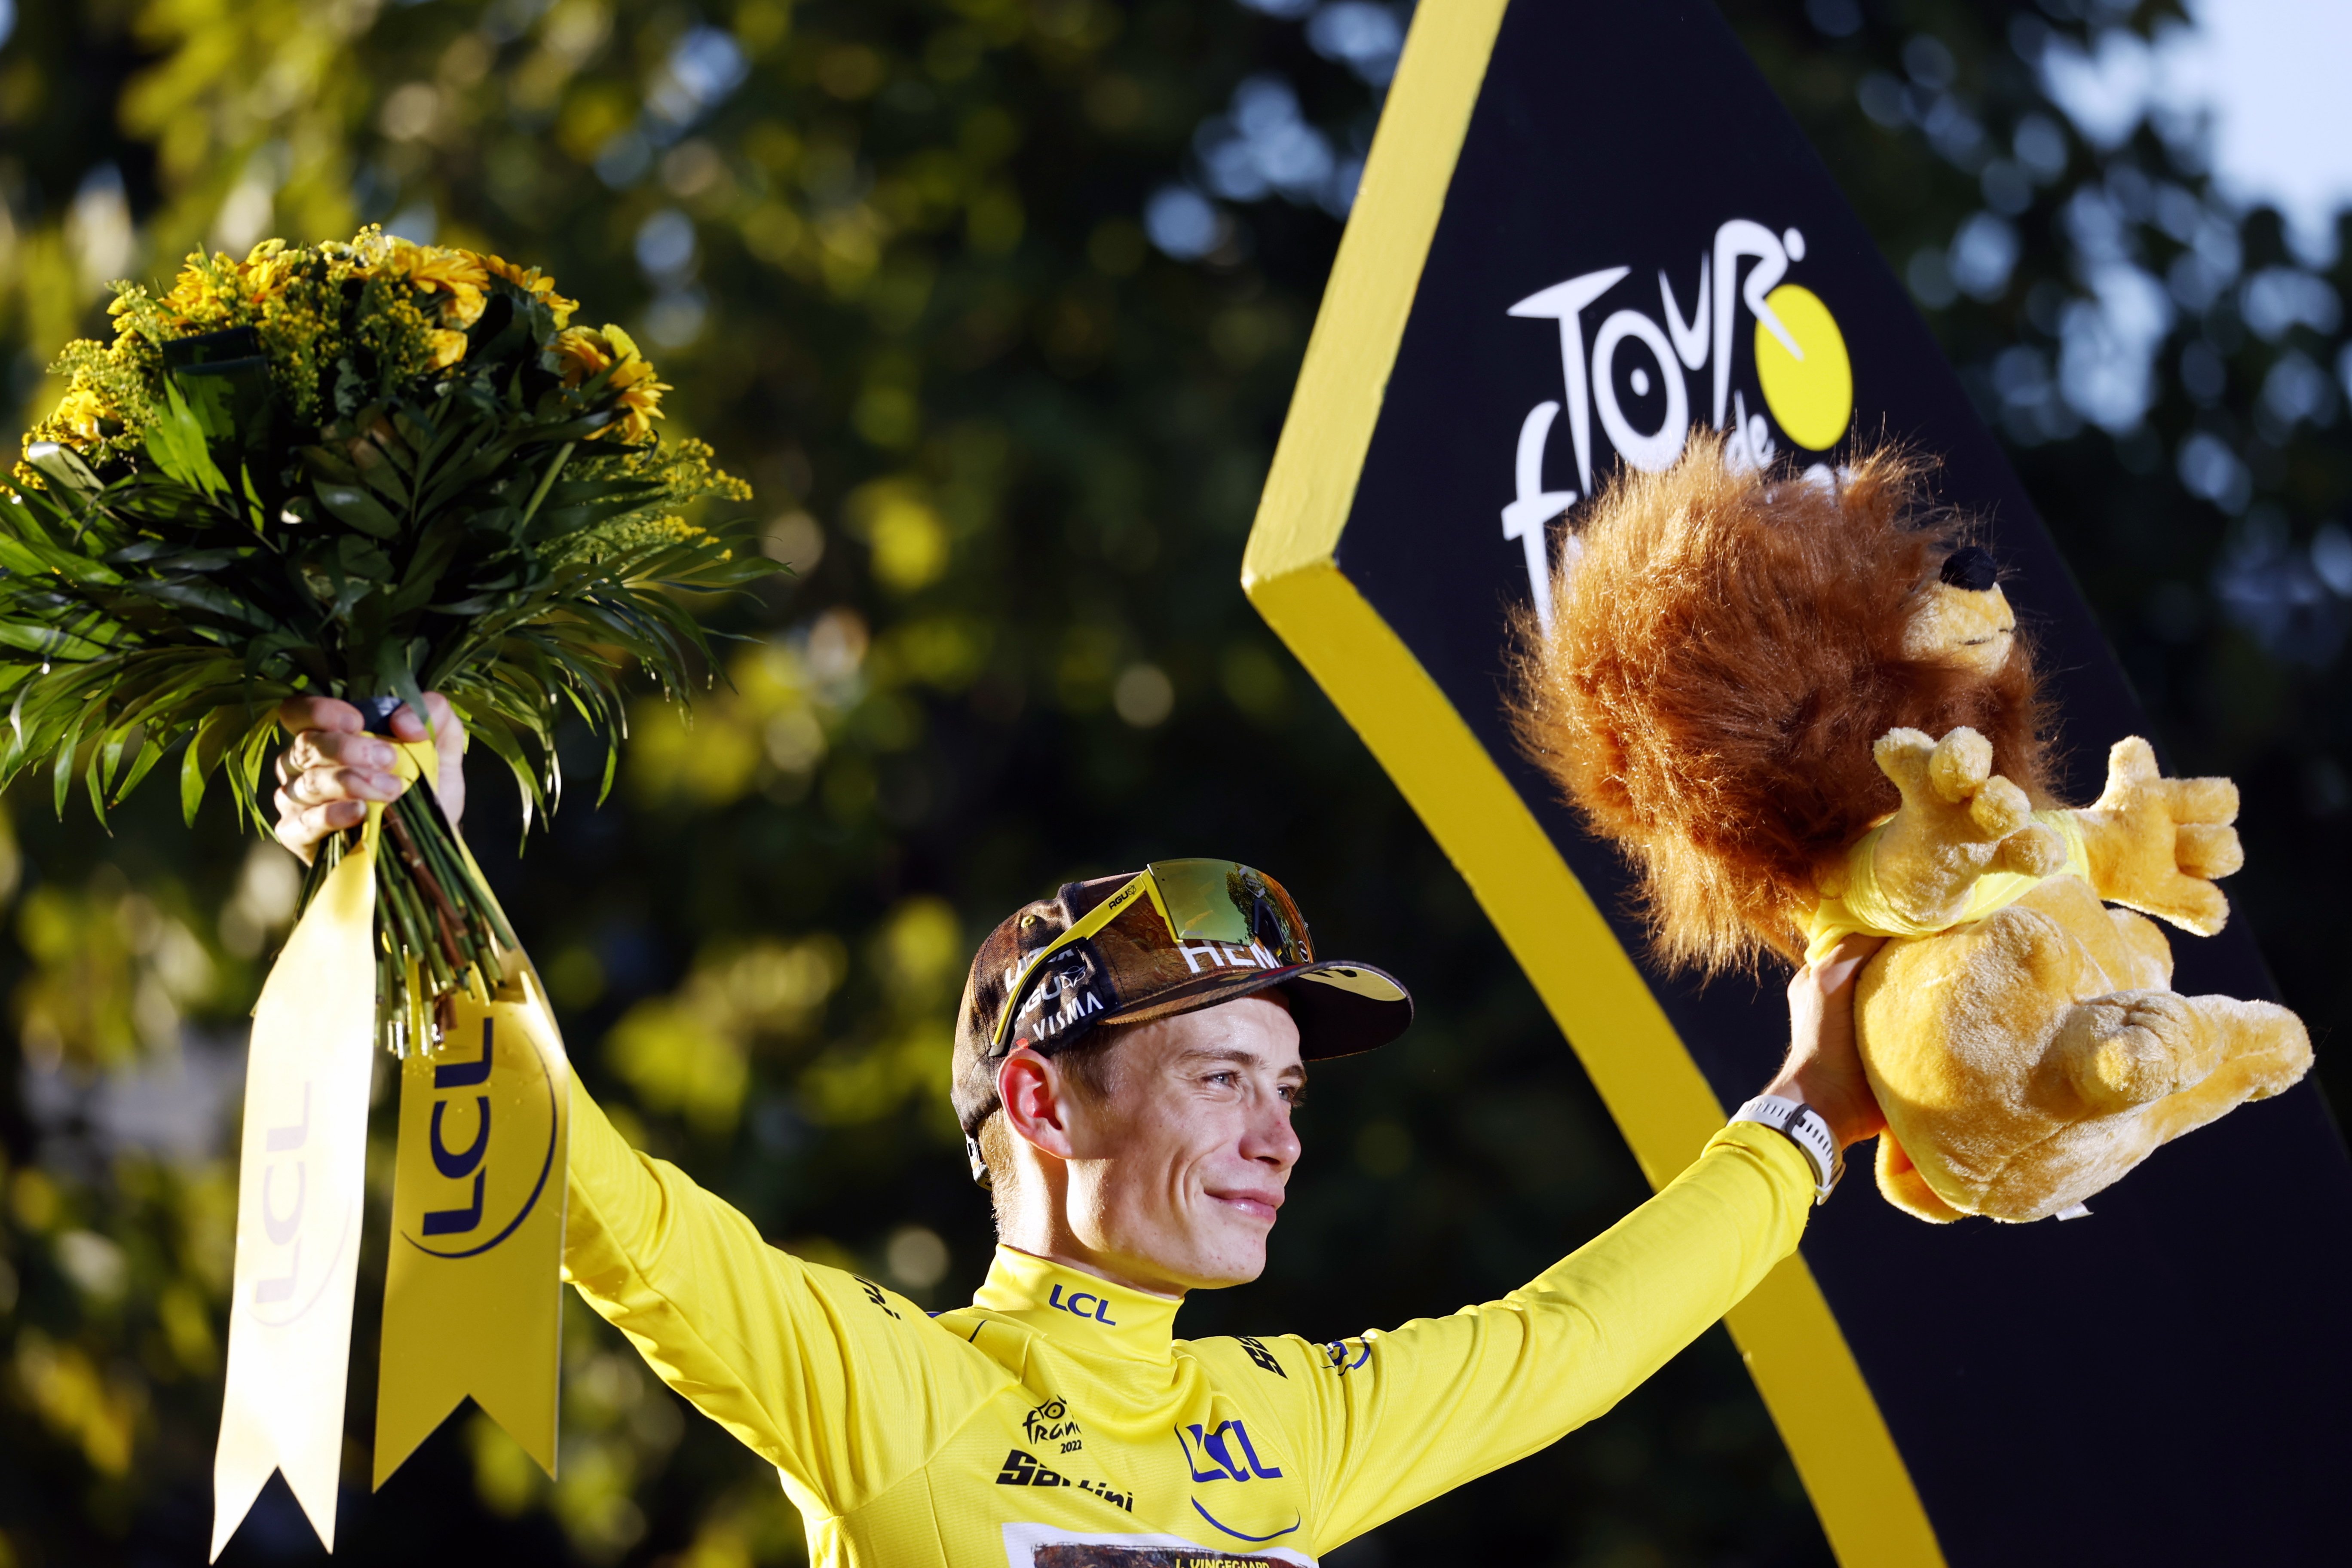 Philipsen gana en el paseo triunfal de Vingegaard hacia París en la clausura del Tour de Francia